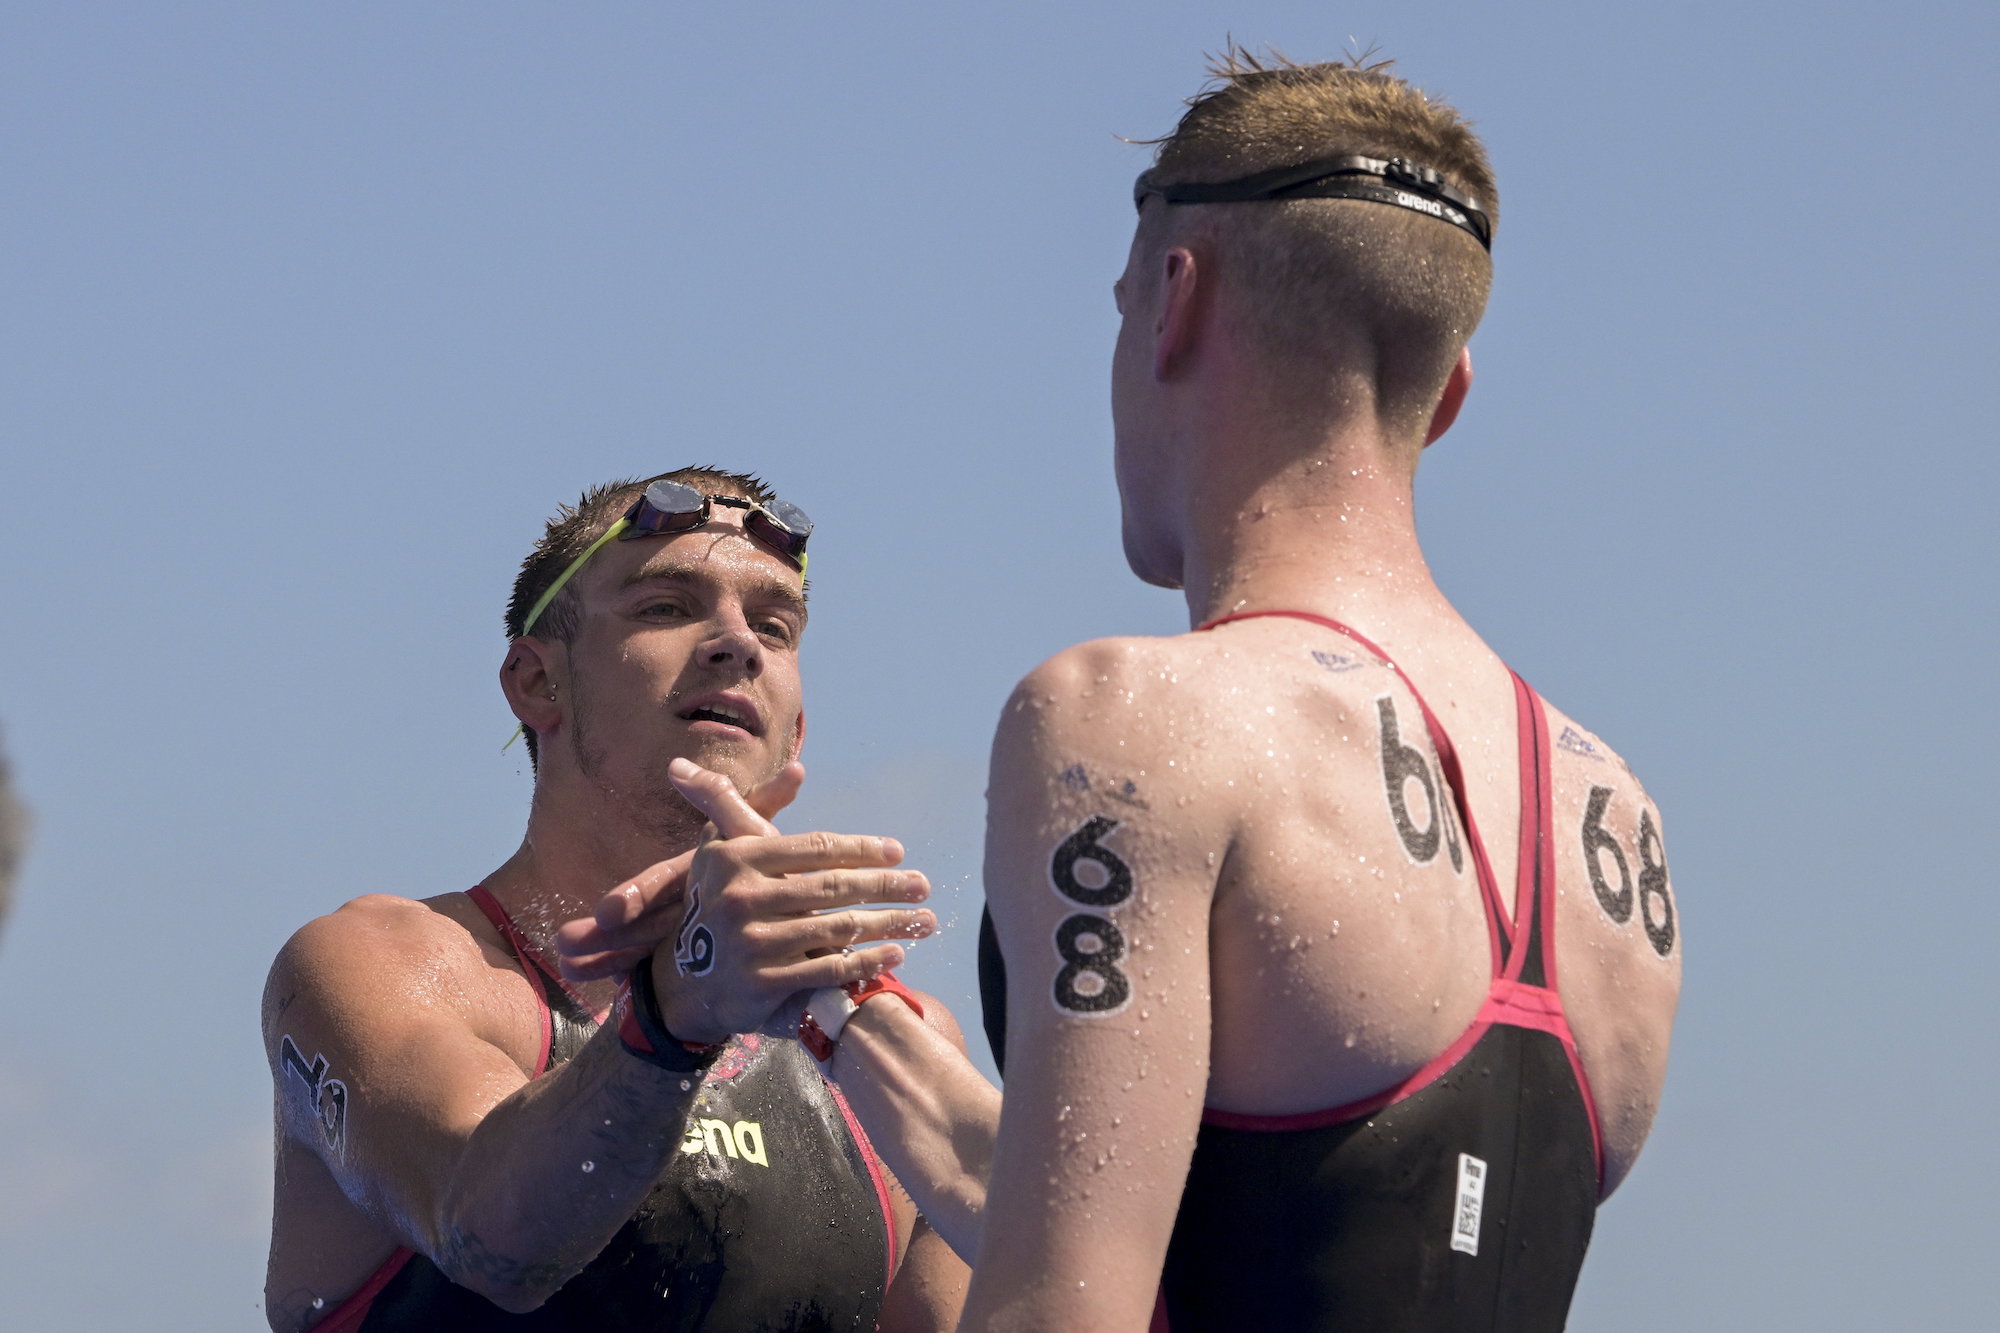 Az ezüstérmes Rasovszky Kristóf és a győztes német Florian Wellbrock a nyílt vízi úszók 10 kilométeres versenye után a fukuokai vizes világbajnokságon.